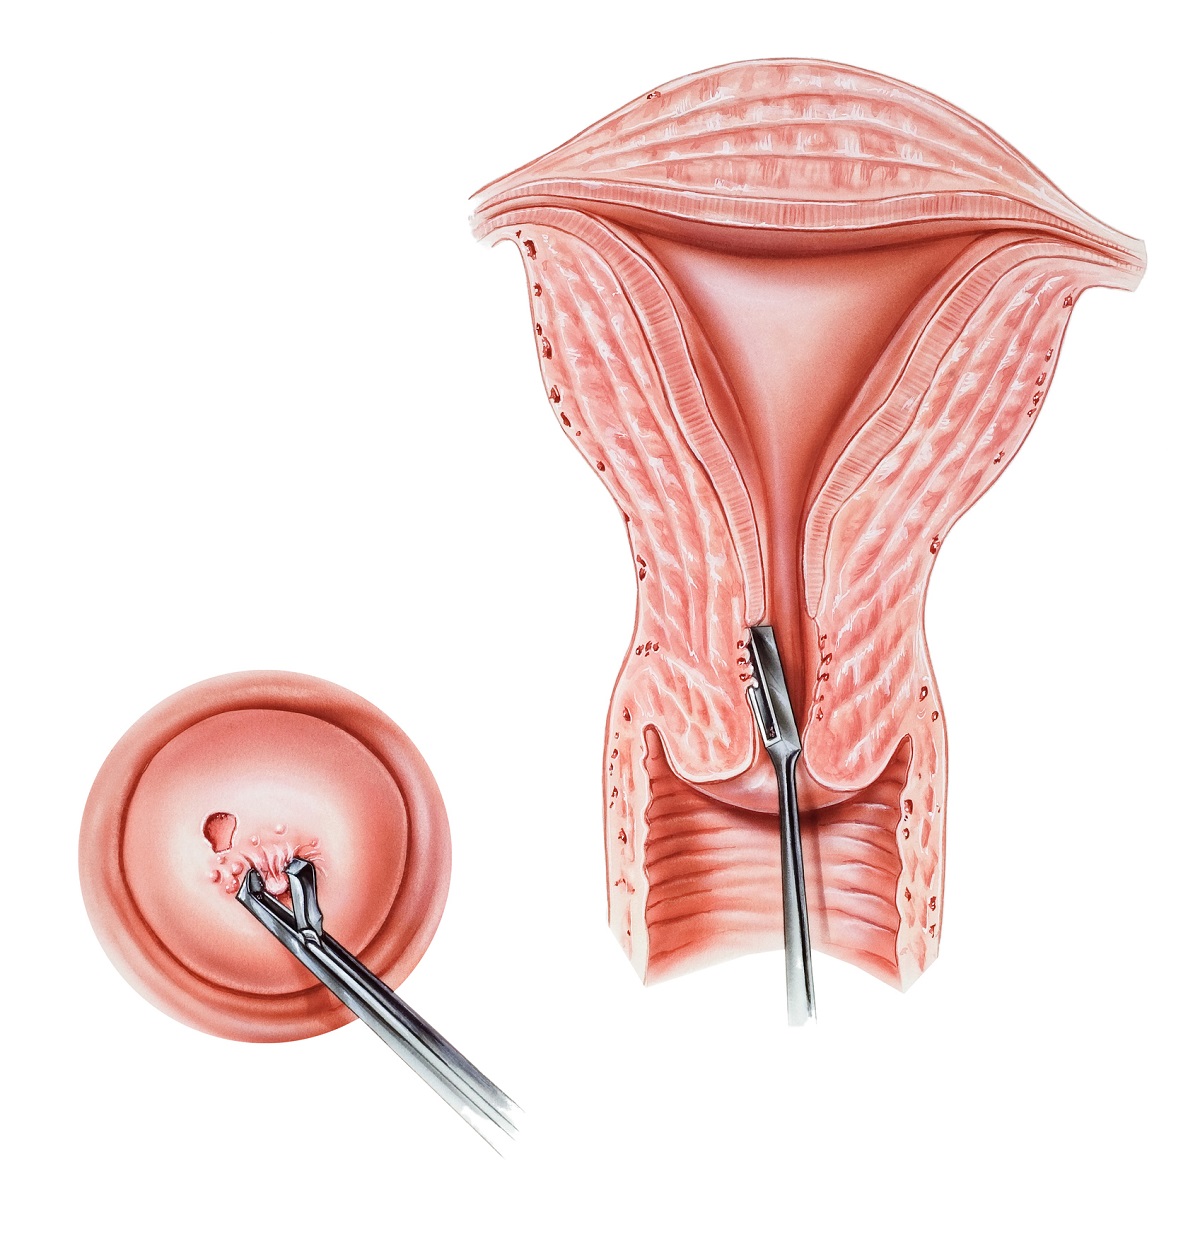 Eine Biopsie ist die Entnahme einer Gewebeprobe aus dem Gebärmutterhals. Quelle: Getty Images.